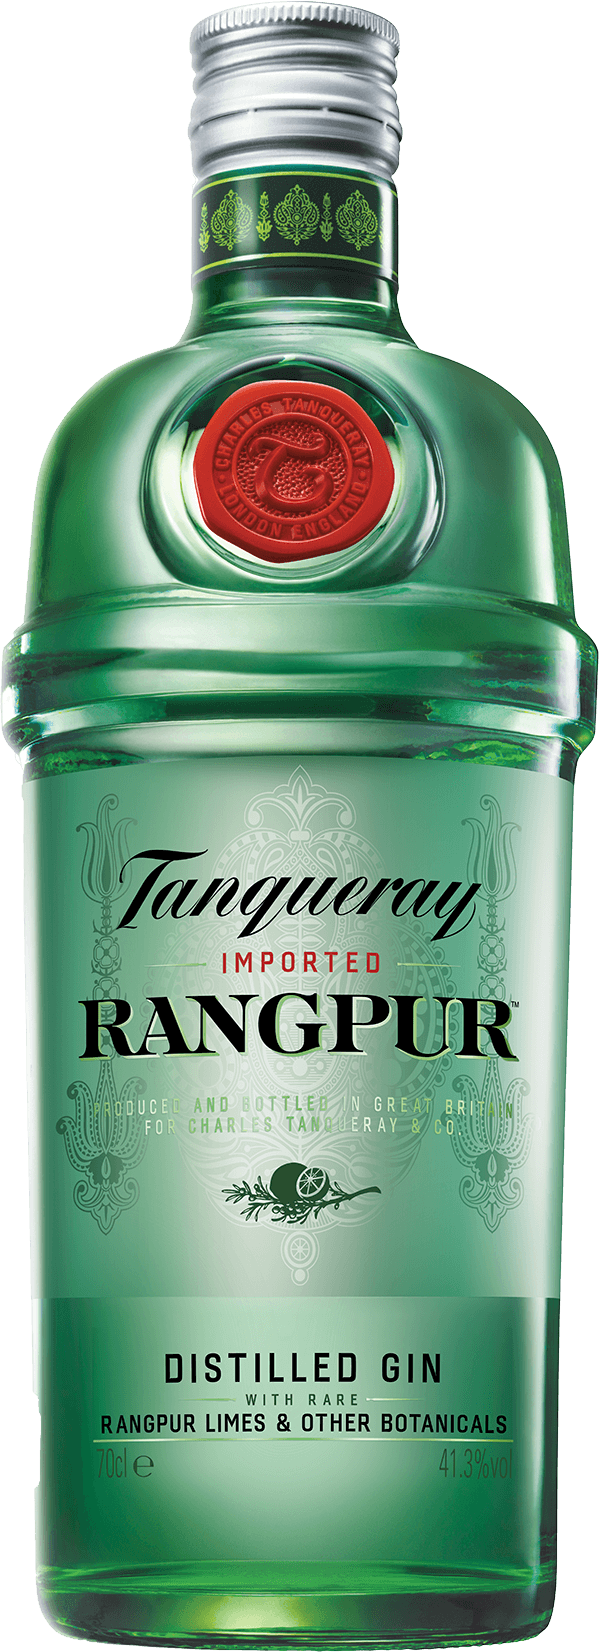 Tanqueray Rangpur Gin 41,3% 0,7L Shop